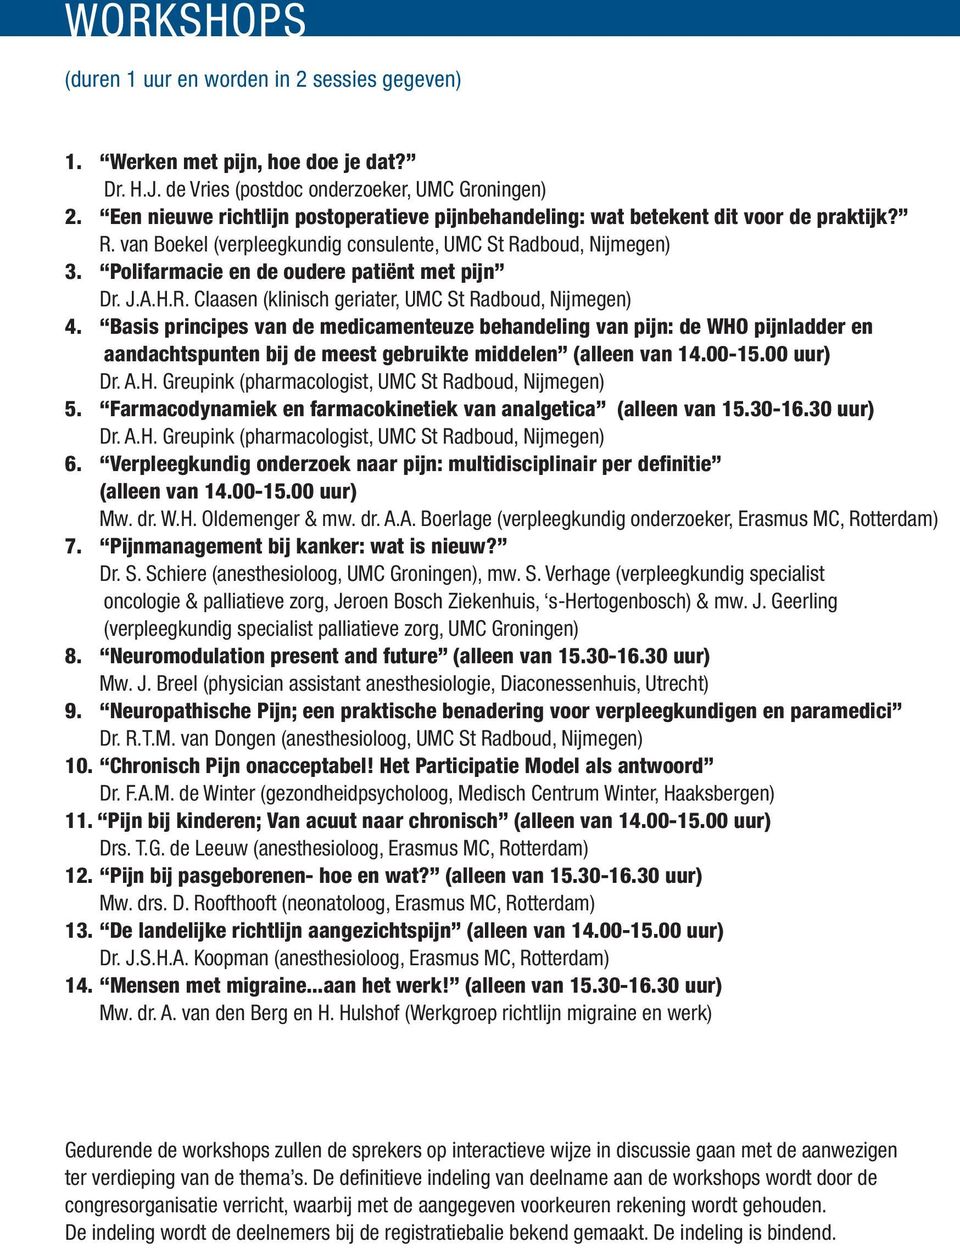 Polifarmacie en de oudere patiënt met pijn Dr. J.A.H.R. Claasen (klinisch geriater, UMC St Radboud, Nijmegen) 4.